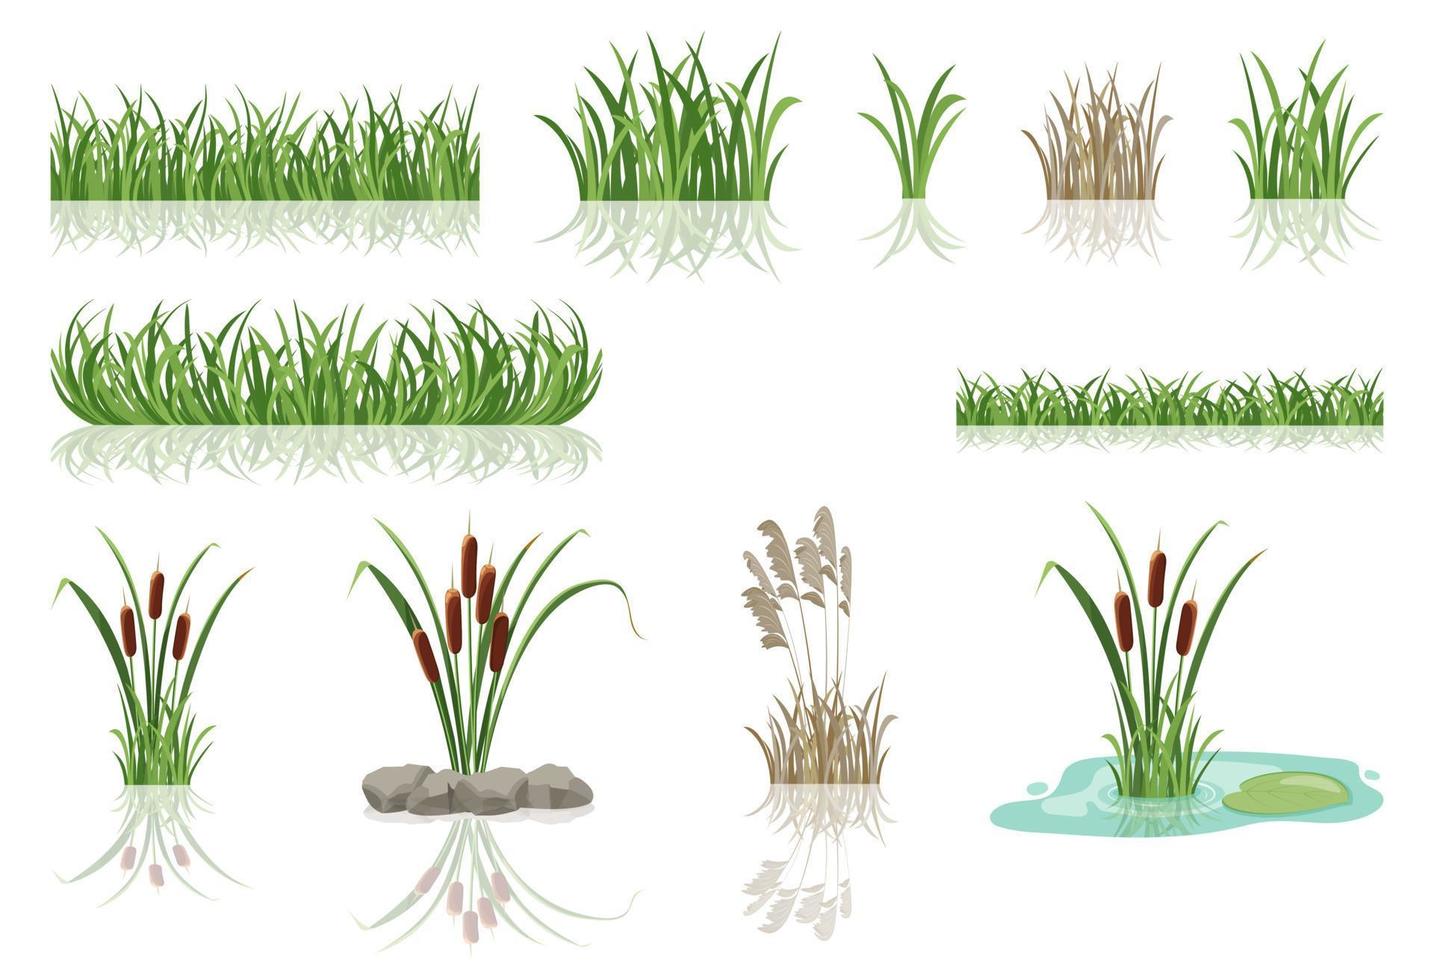 pântano de juncos na grama. ilustração em vetor de matagais do lago.